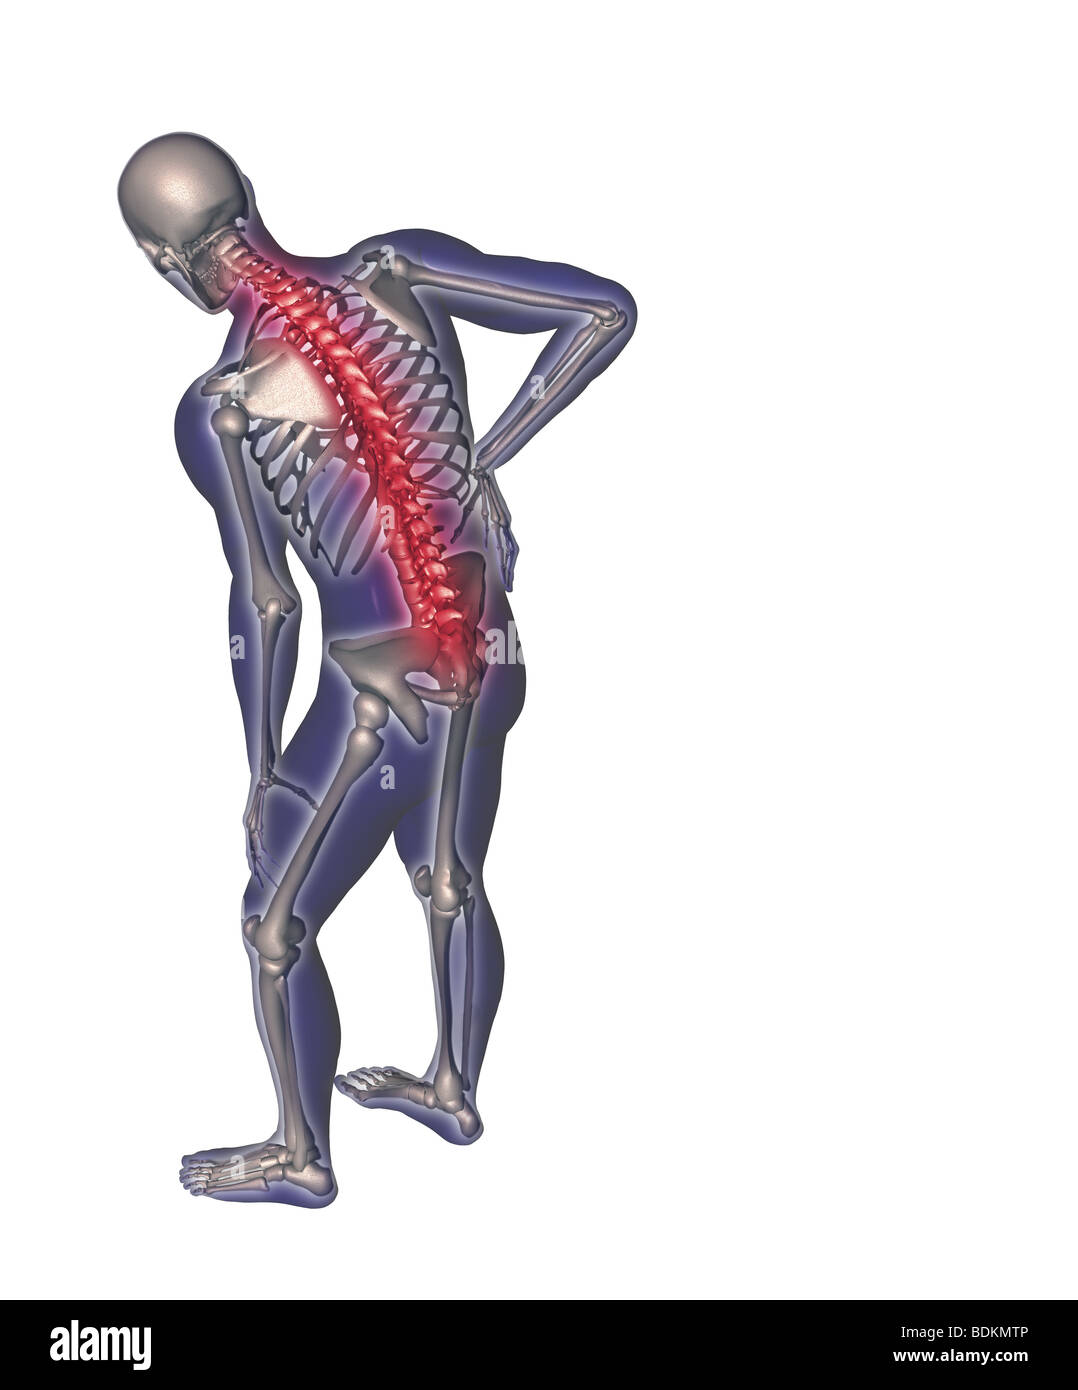 Illustration depicting back pain Stock Photo